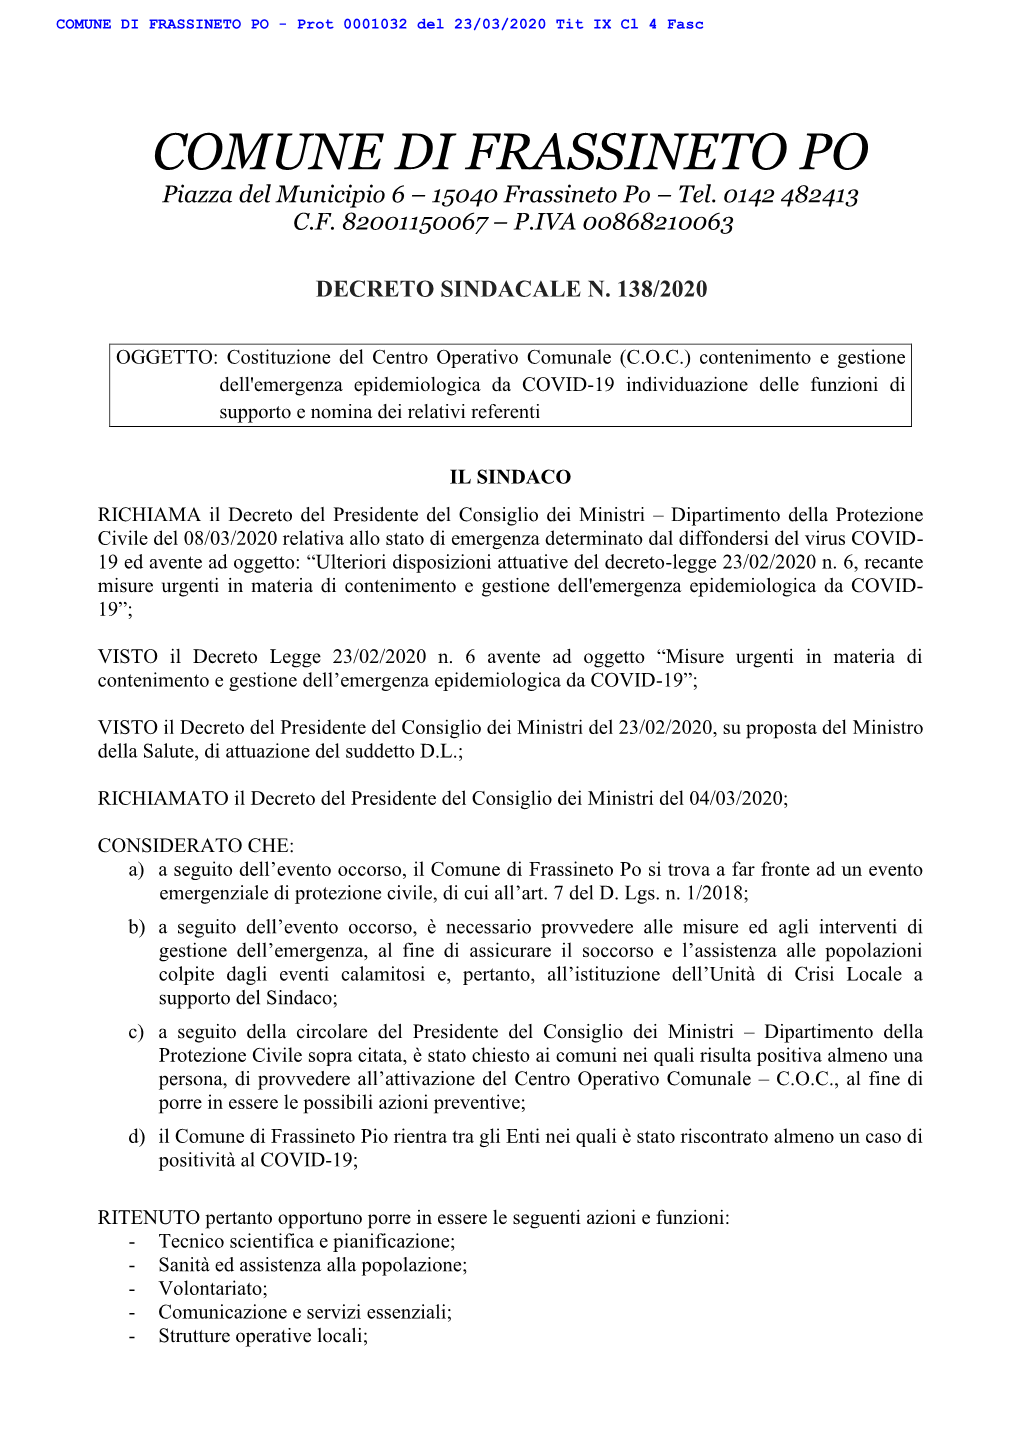 COMUNE DI FRASSINETO PO - Prot 0001032 Del 23/03/2020 Tit IX Cl 4 Fasc